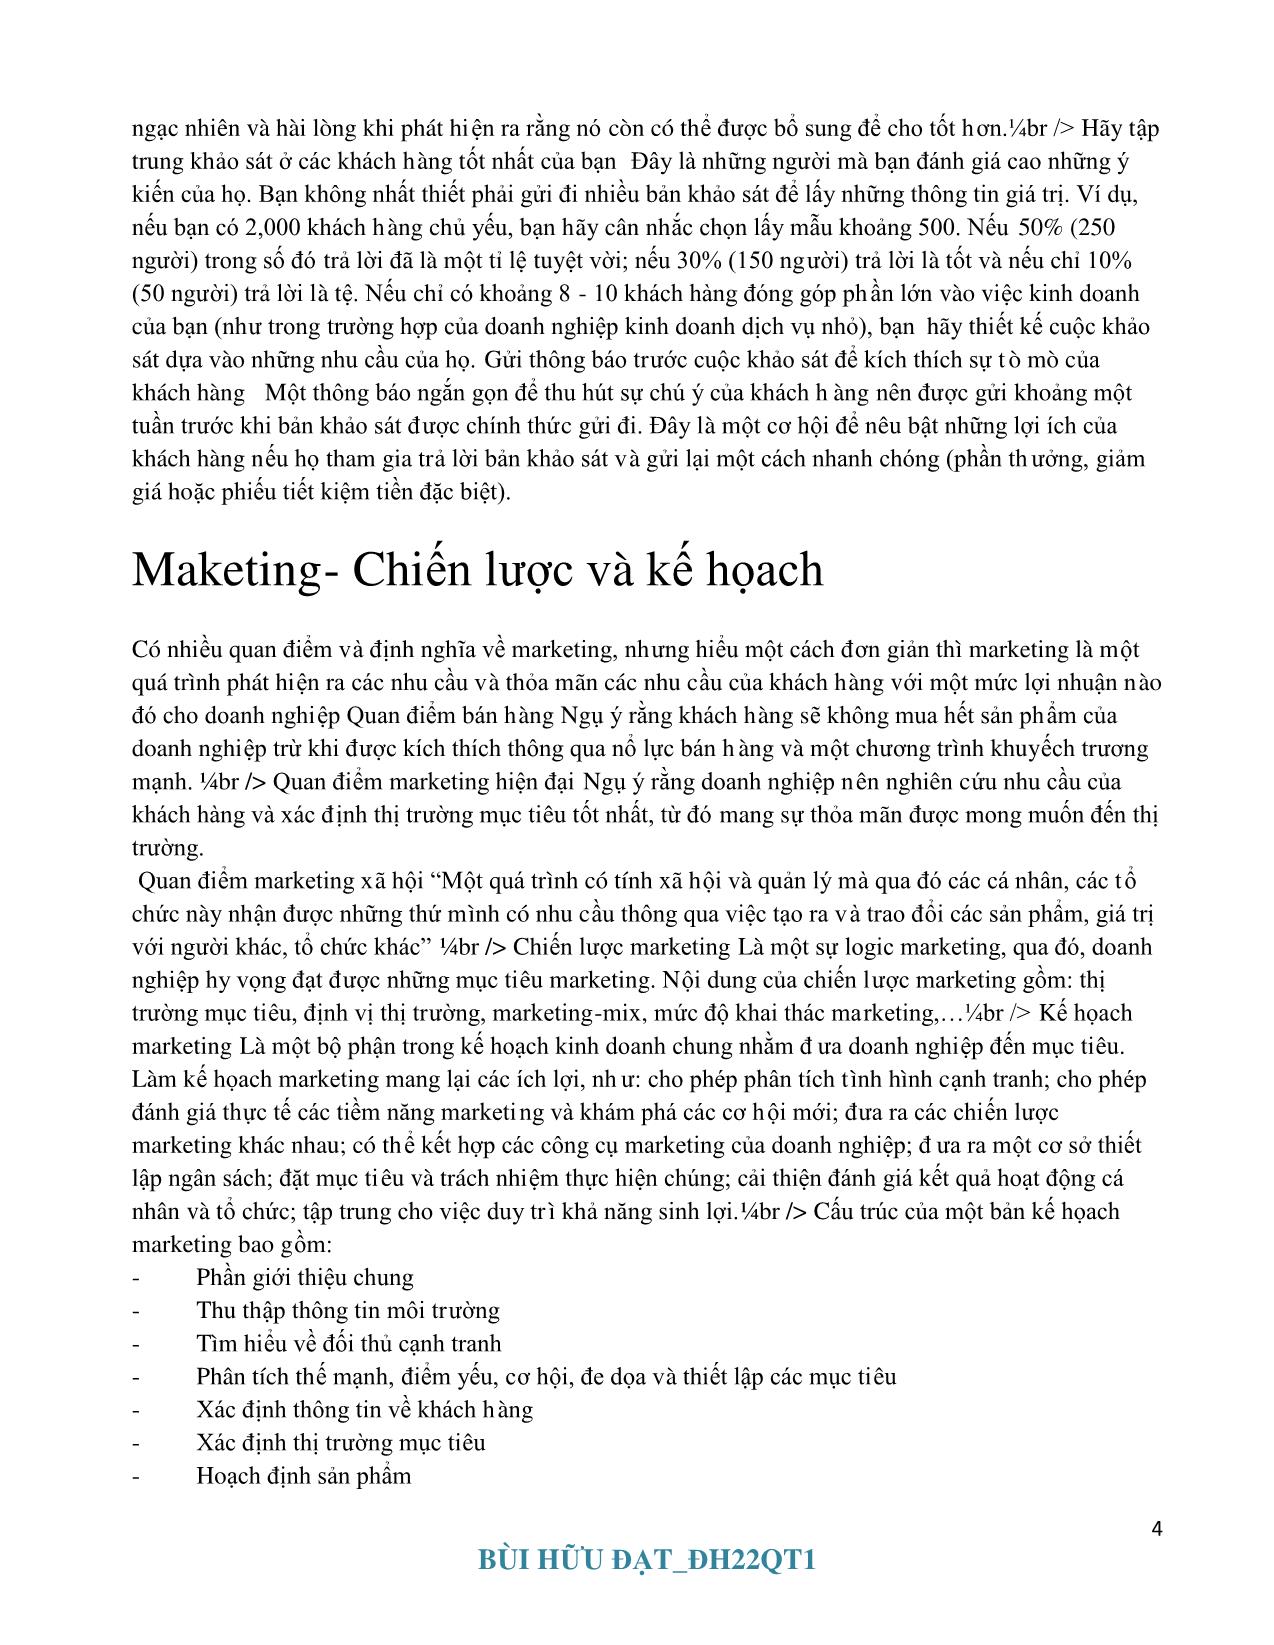 Tổng quan về Marketing căn bản trang 4